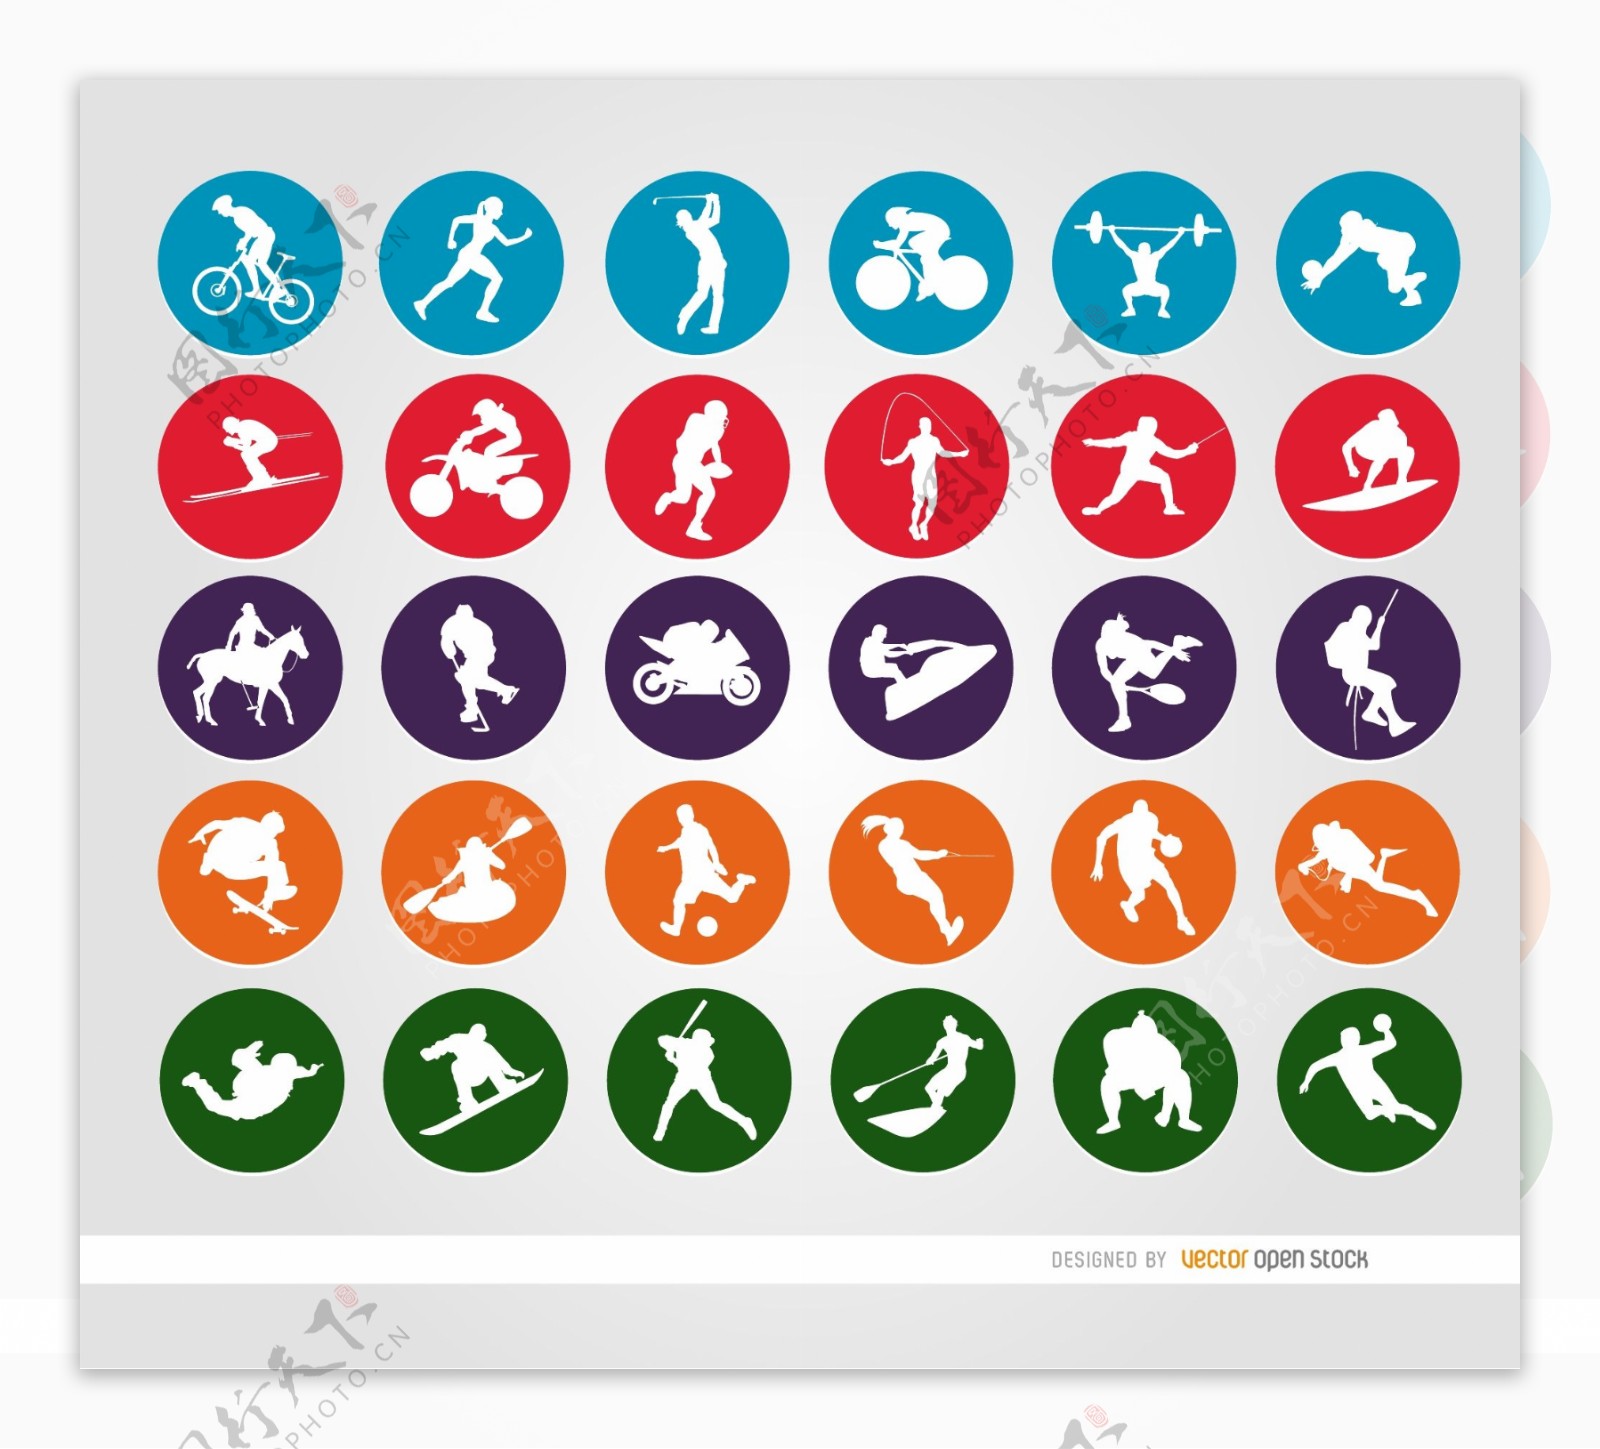 体育运动圆形图标图片